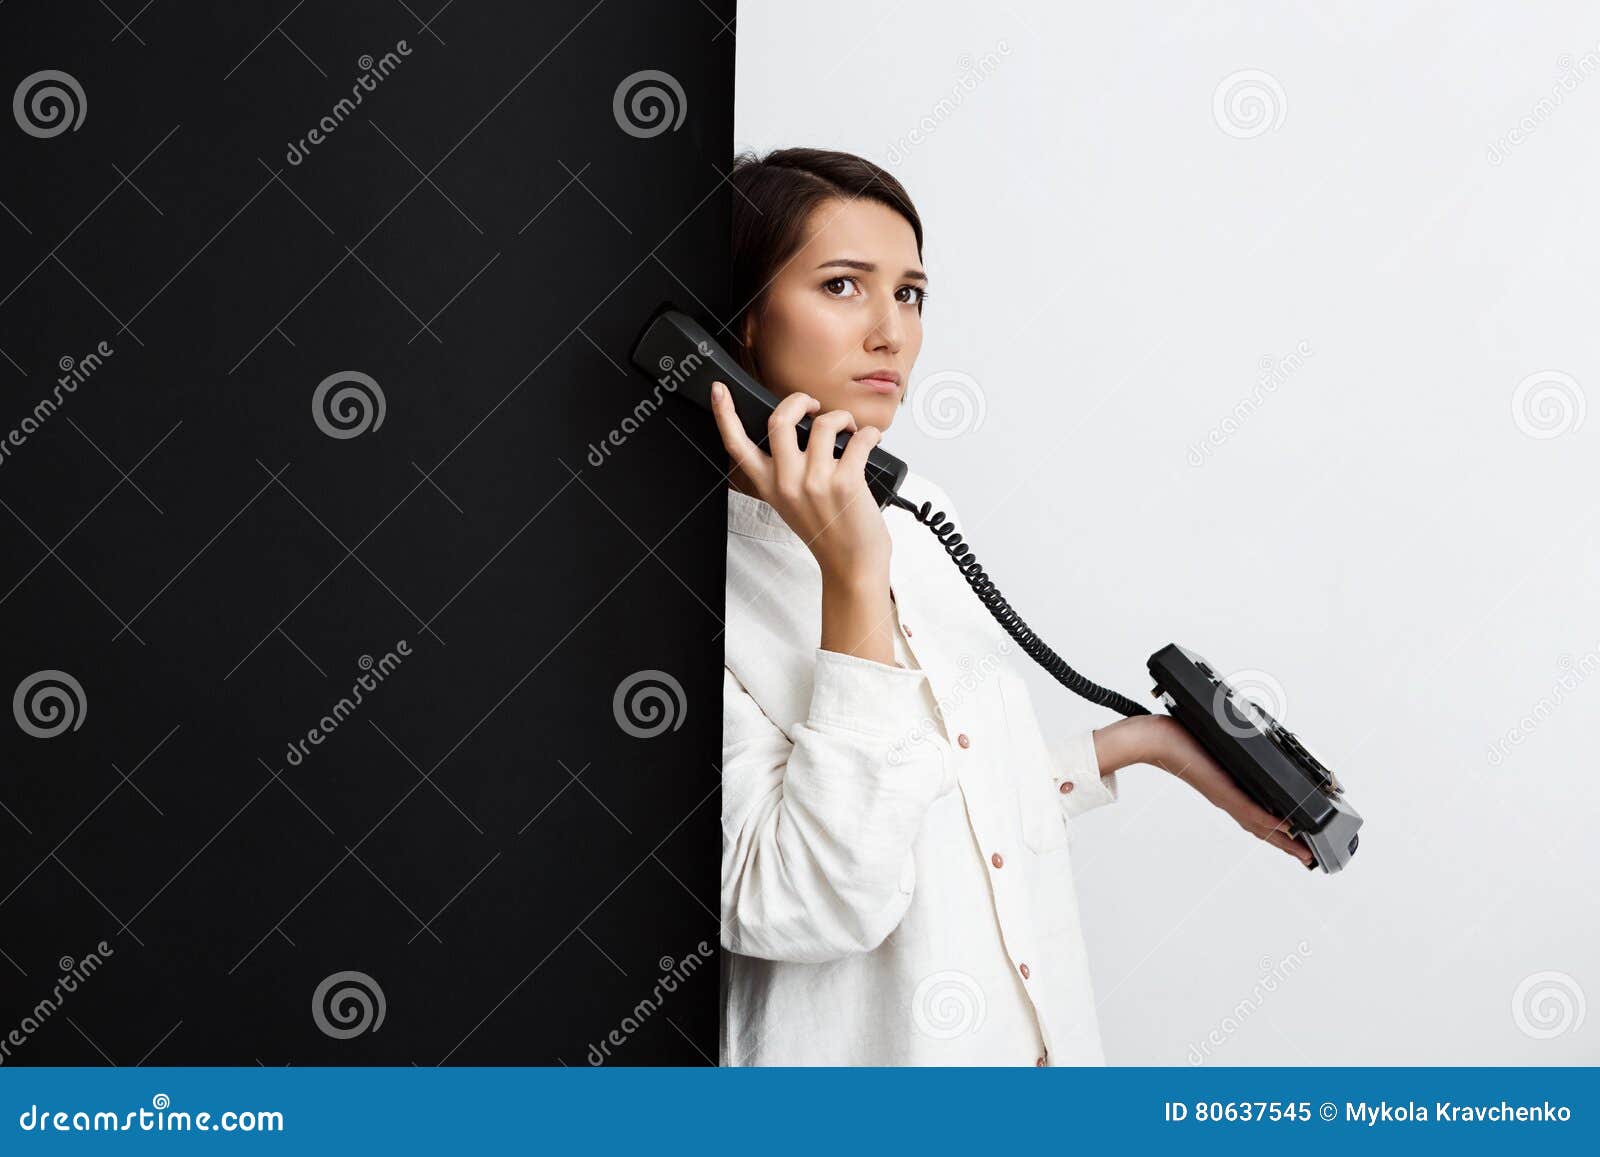 Девушка с трубкой телефона арт. Девушка говорящая по старинному телефону.